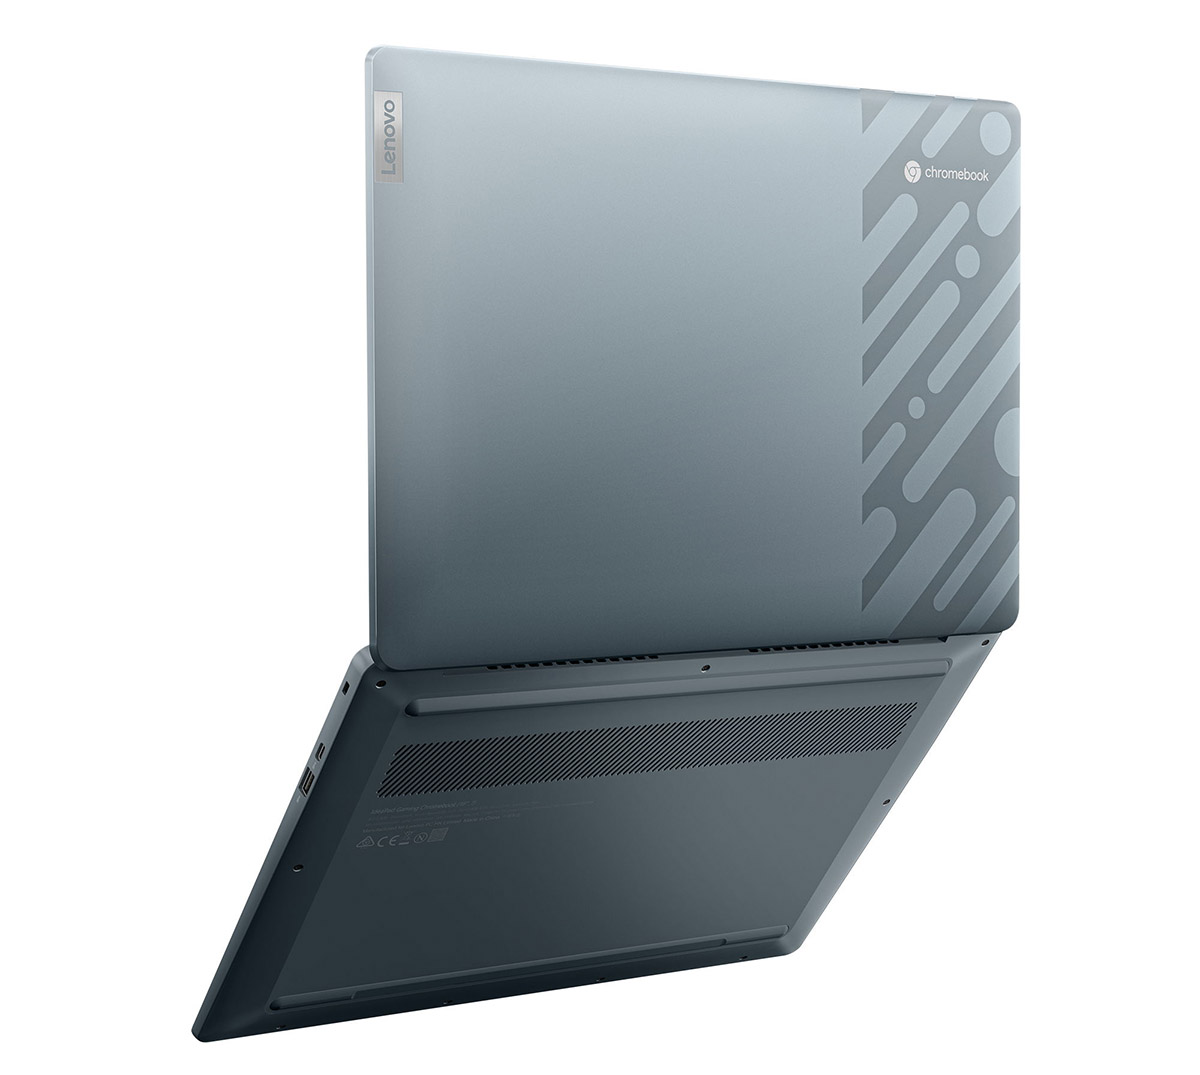 Lenovo IdeaPad Gaming Chromebook